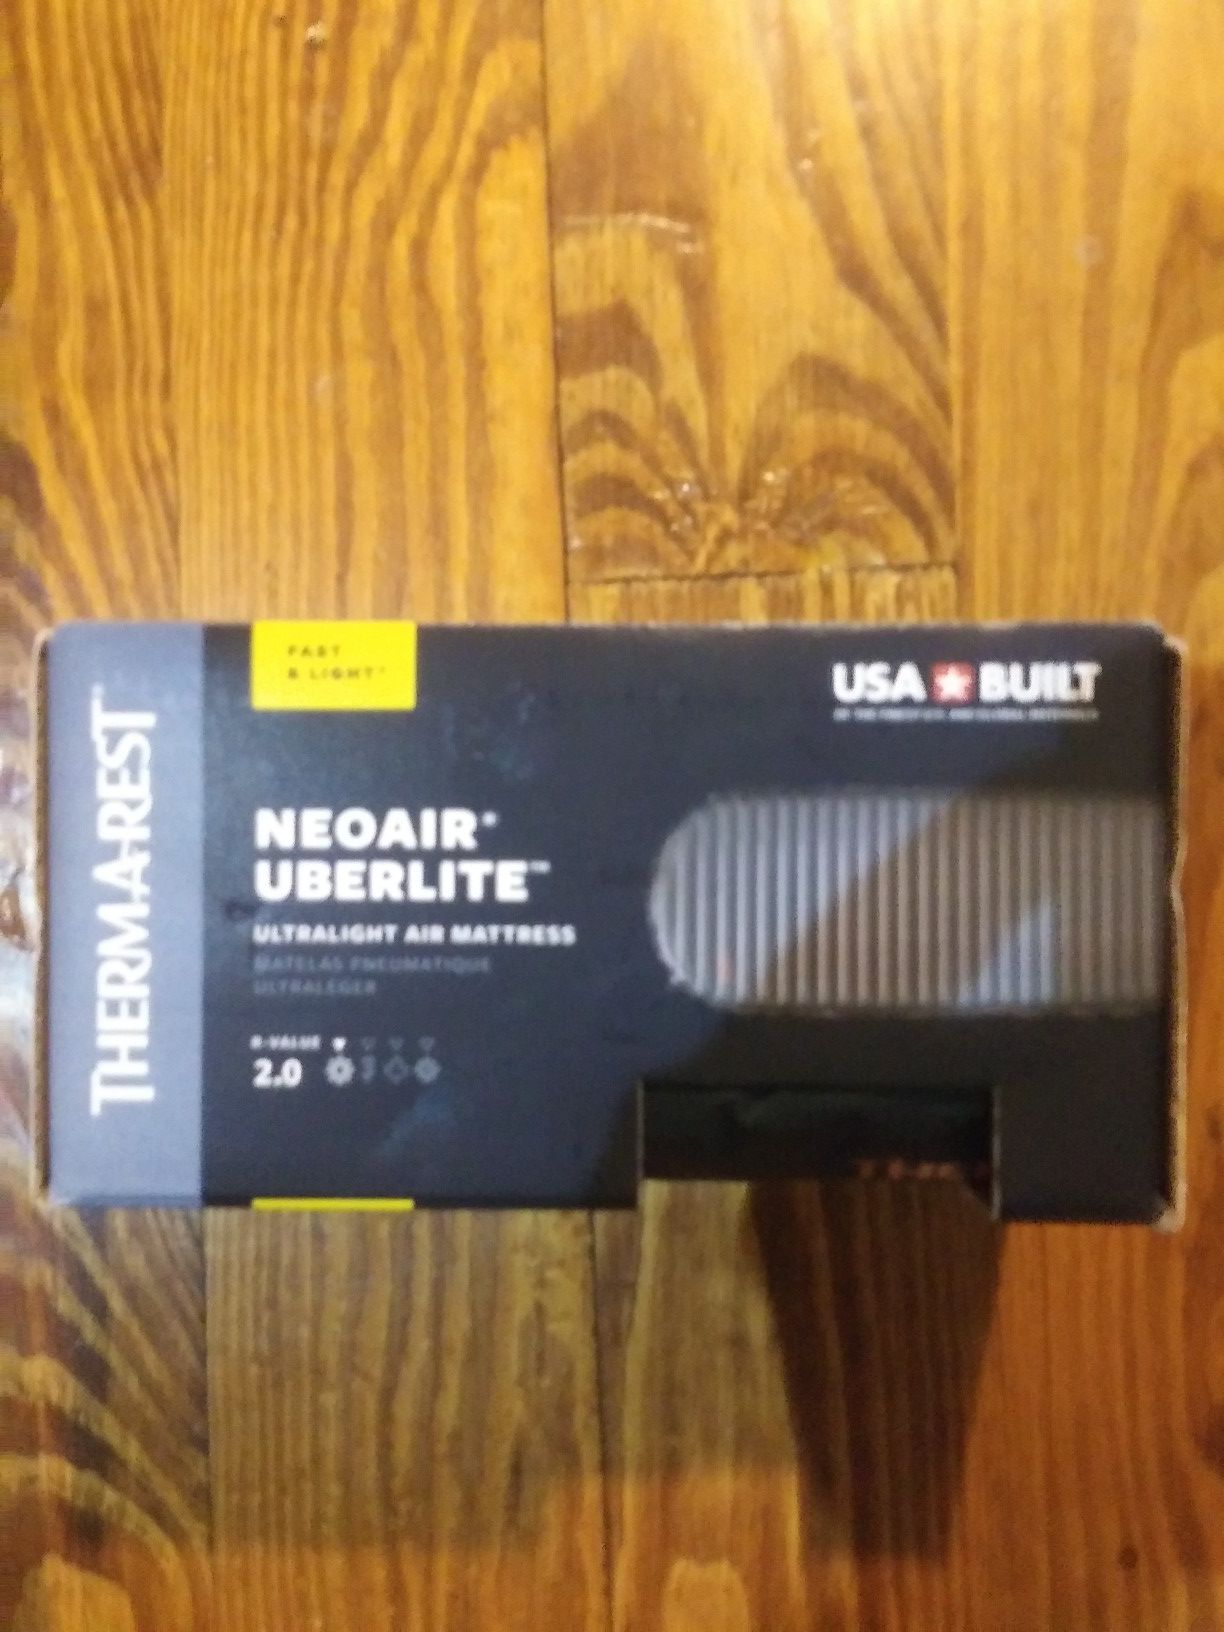 Therm-a-rest Neoair uberlite ultralight air mattress